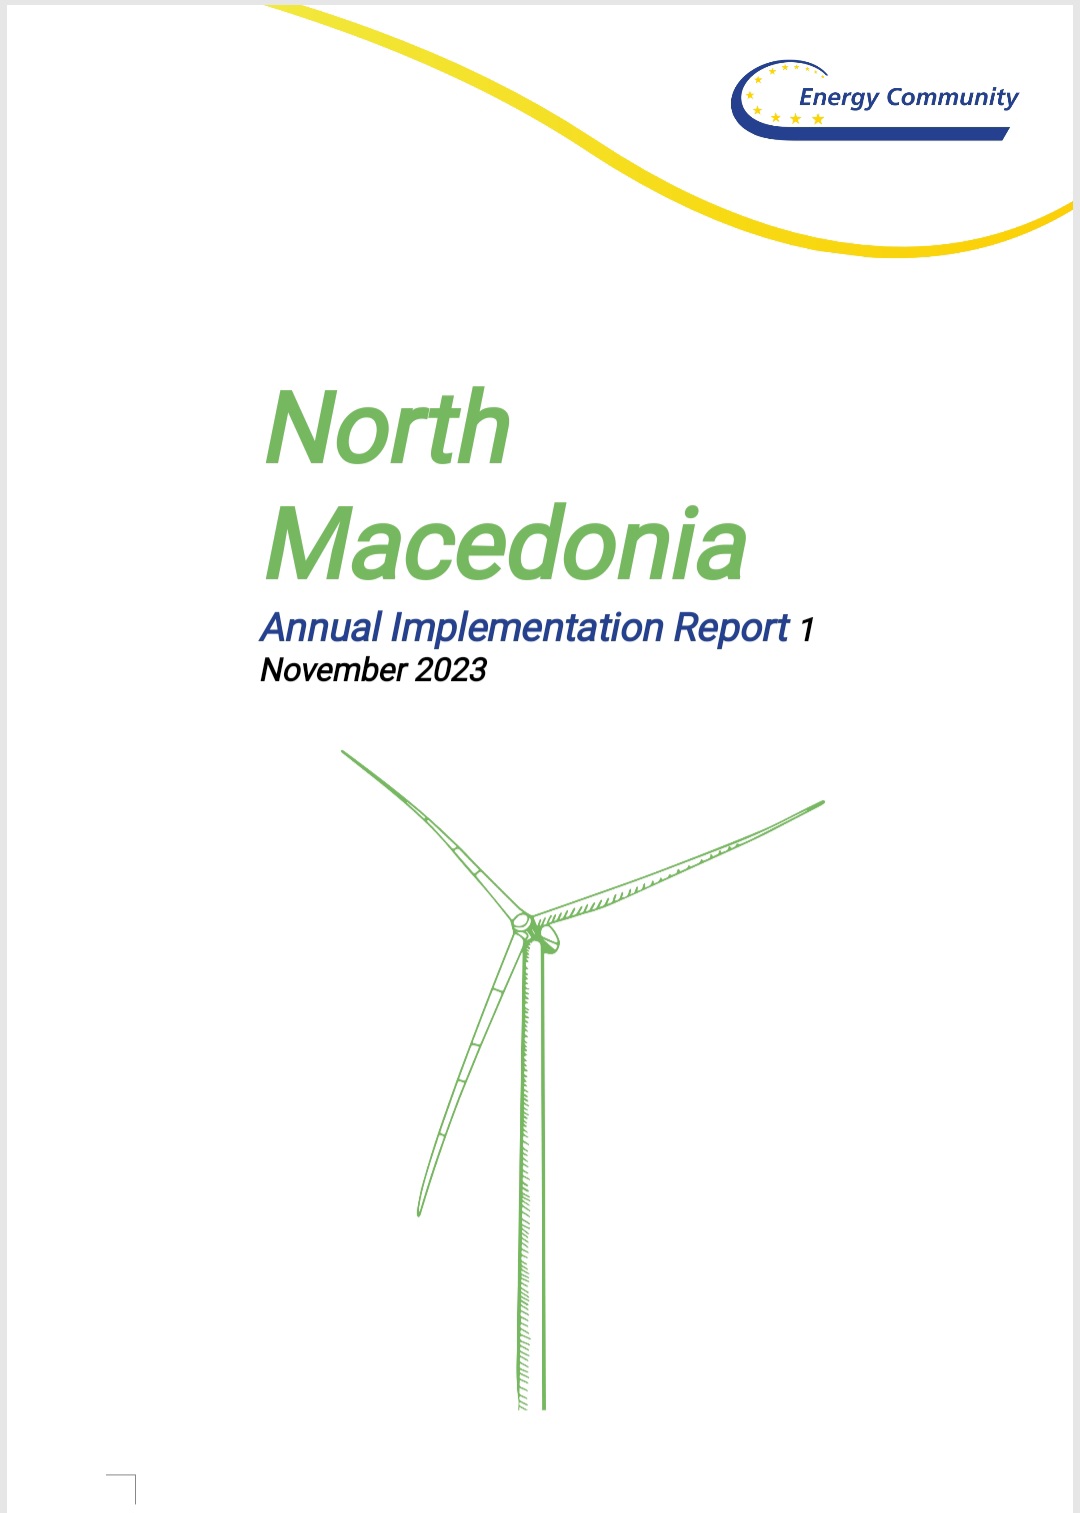 Raporti vjetor i Komunitetit evropian të energjetikës